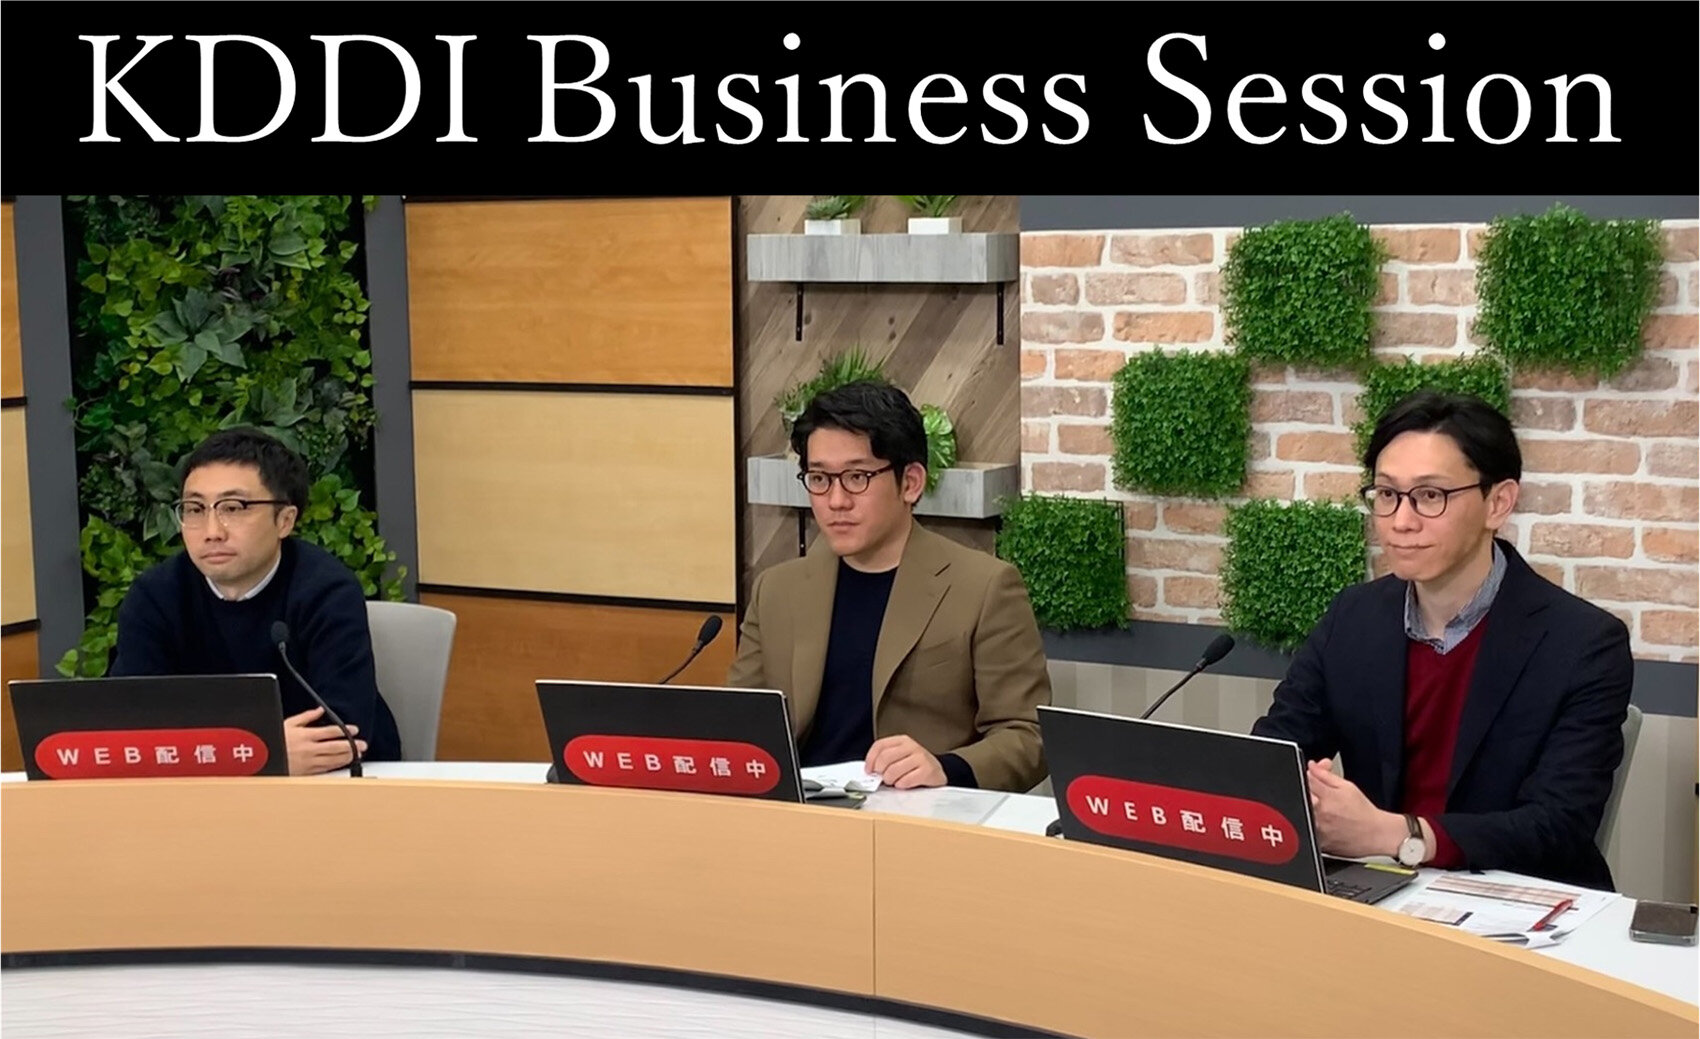 リーダー社員による新卒向けプレゼンテーション形式会社説明会！「KDDI Business Session」アーカイブ動画公開中